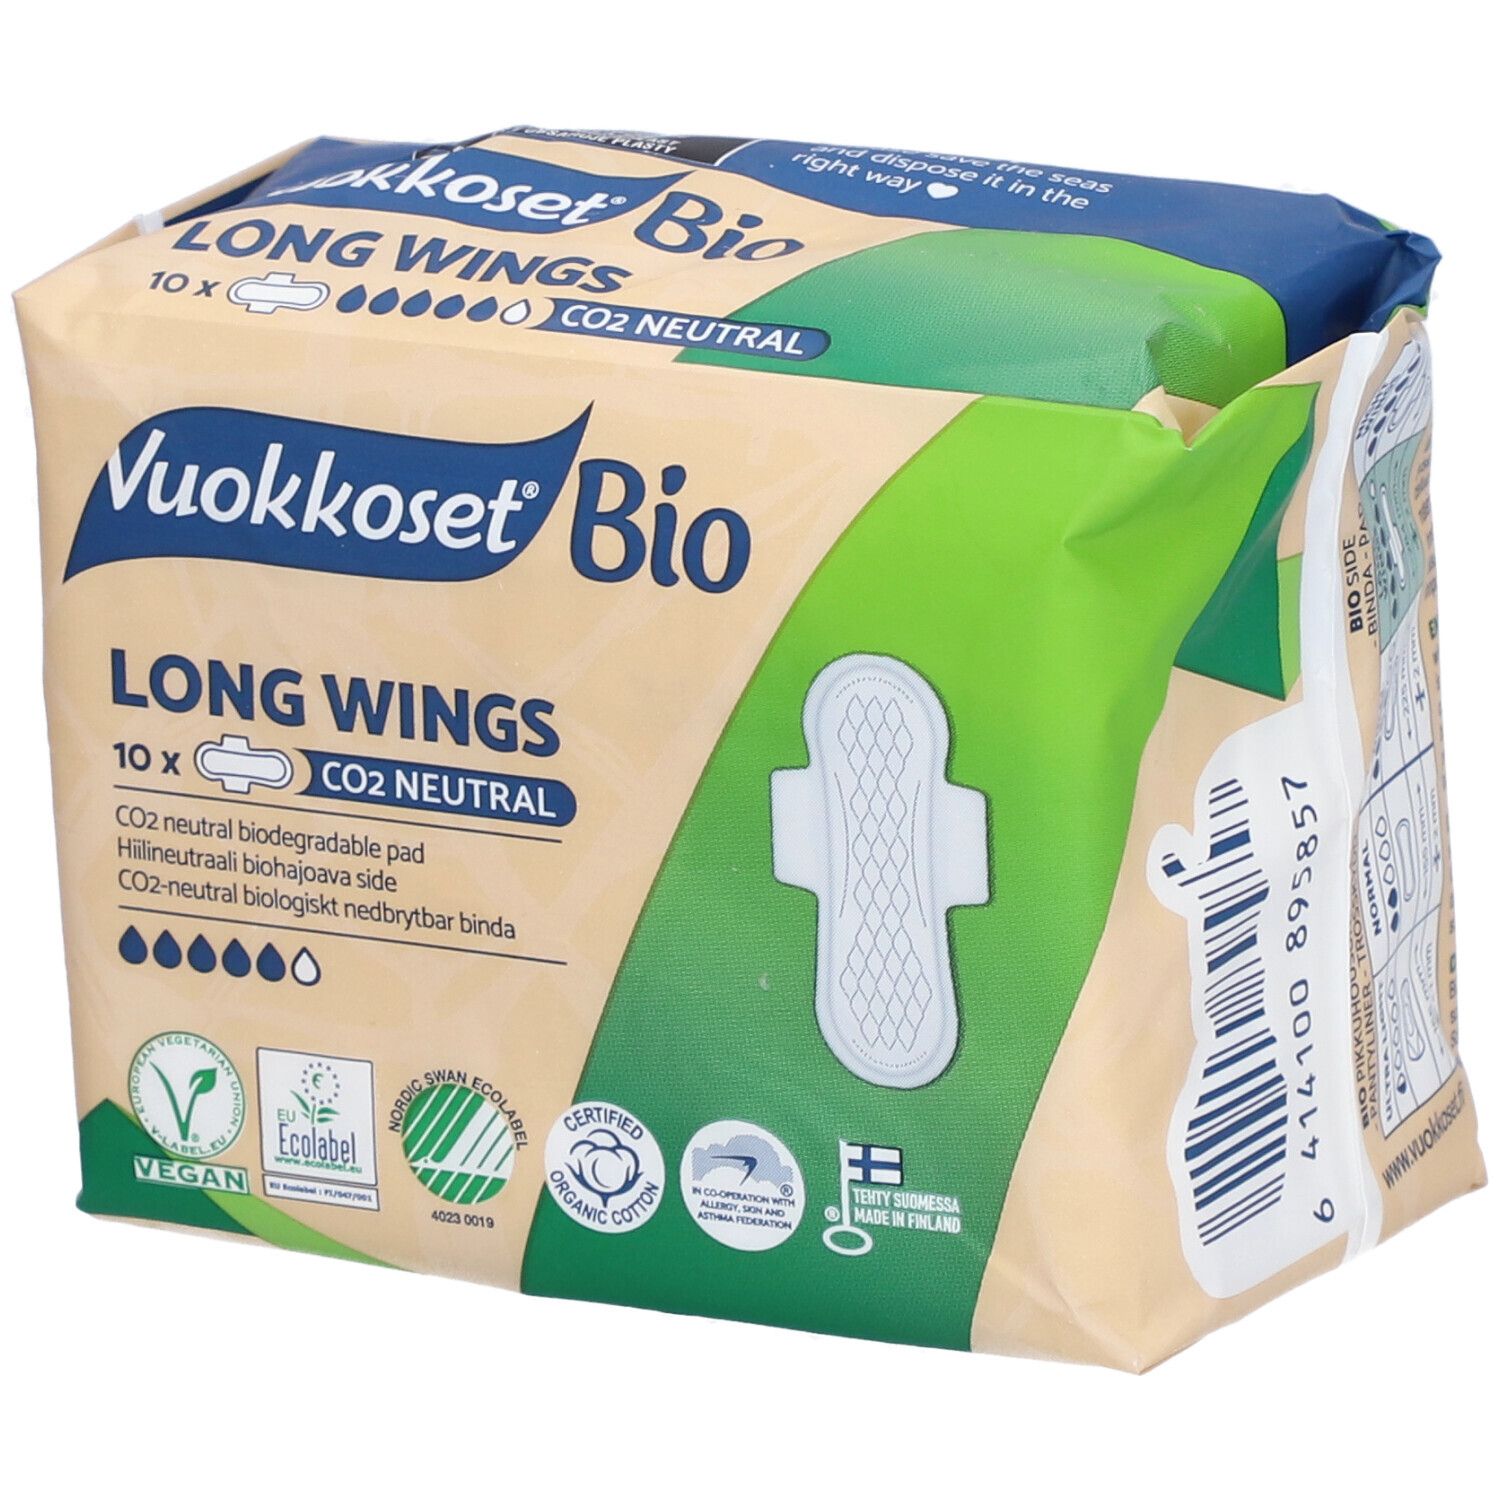 Vuokkoset® 100% Bio Long Wings